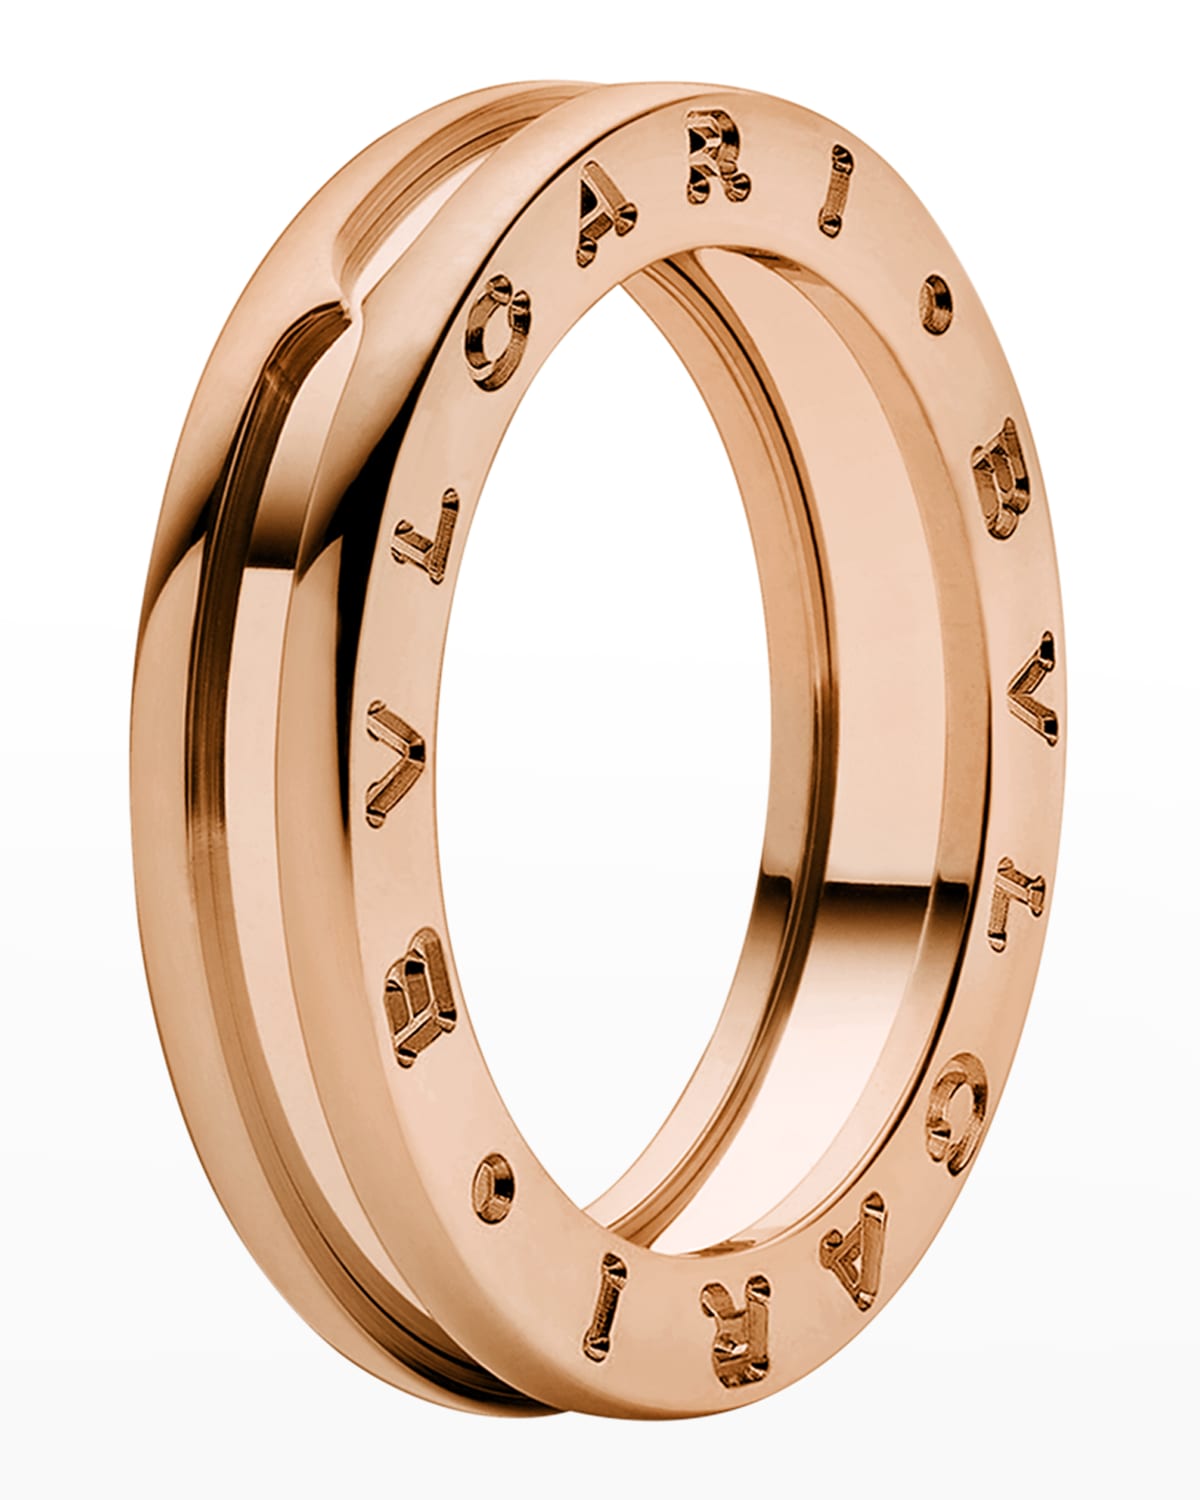 Unisex 18K Rose Gold Ring, Size 58